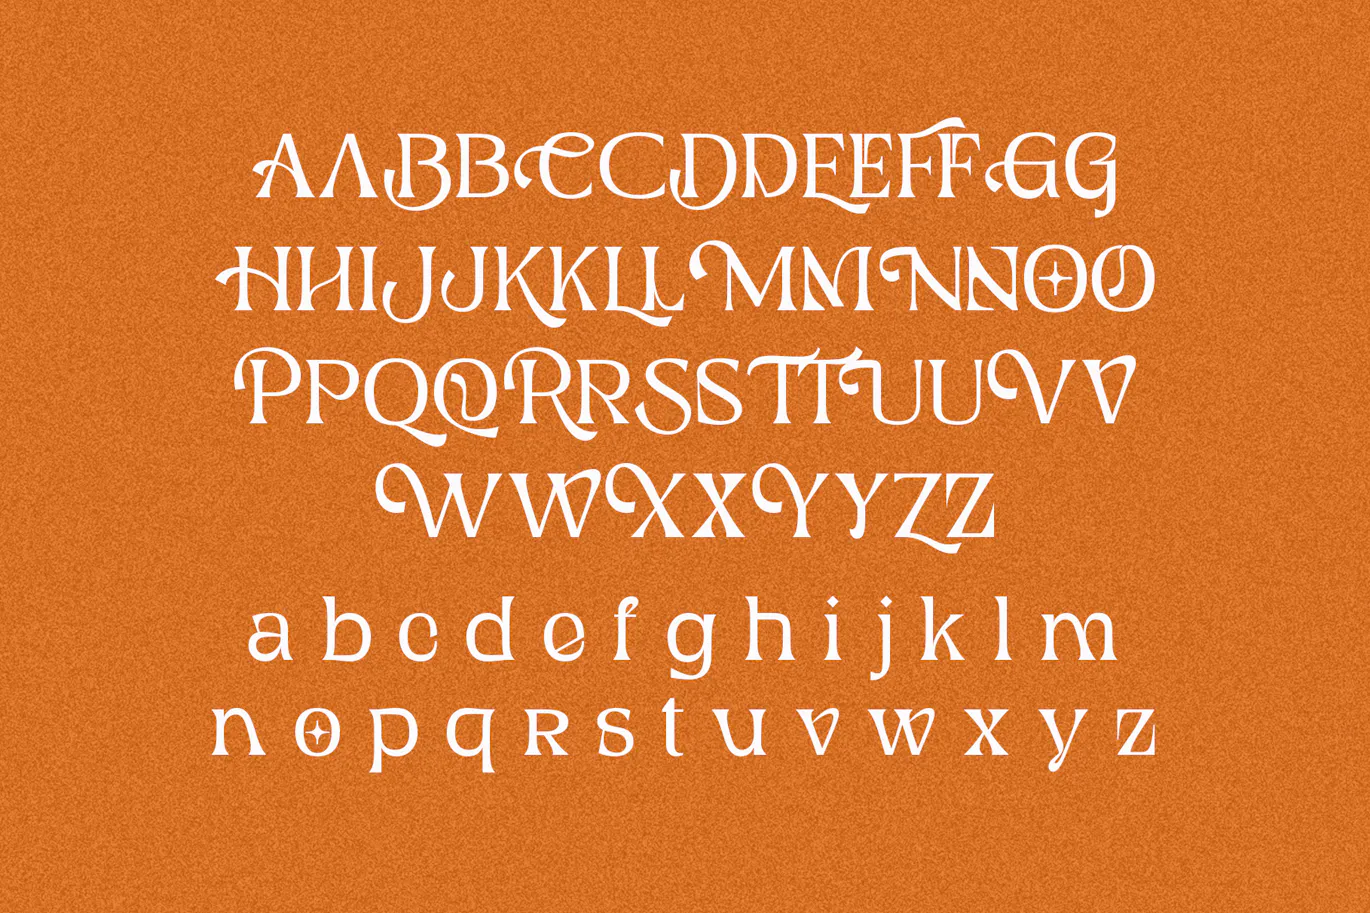 非常的精致优美可用于贺卡设计的英文字体 Ghiena - Display Serif Typeface 设计字体 第10张